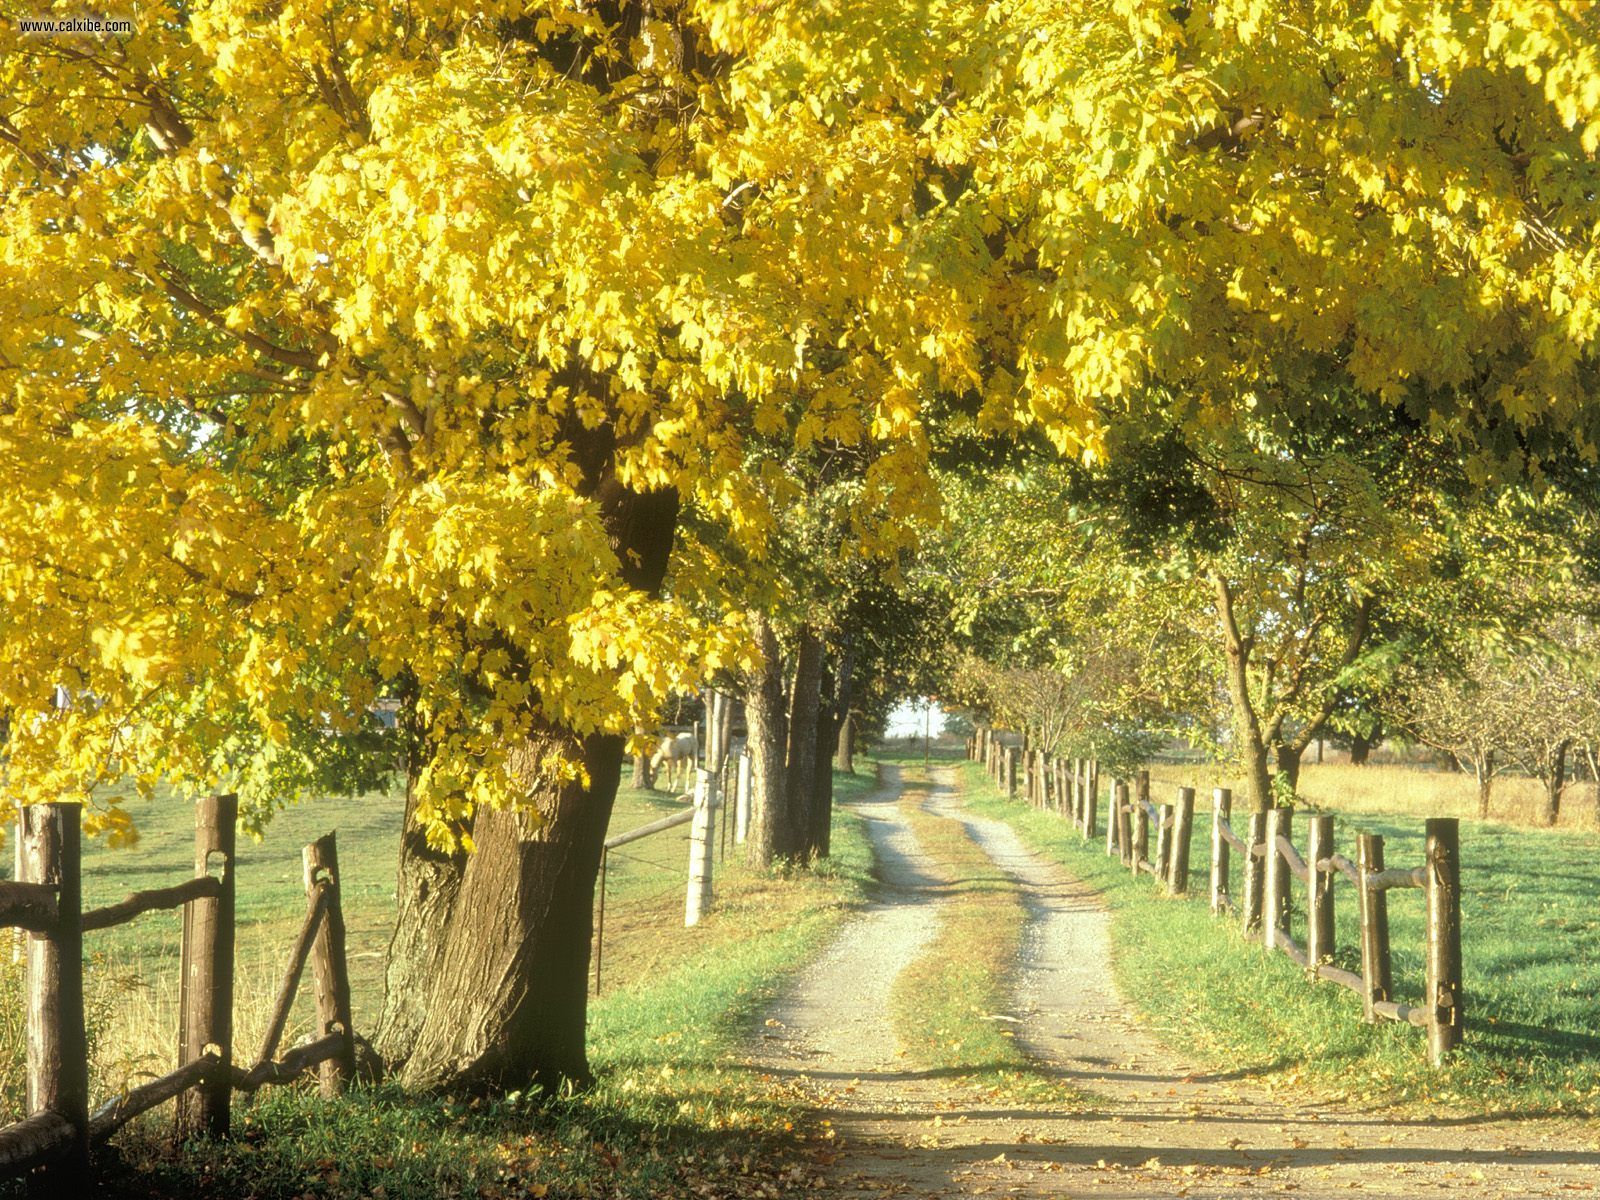 Nature Rural Road In Autumn Ontario Canada Picture Nr